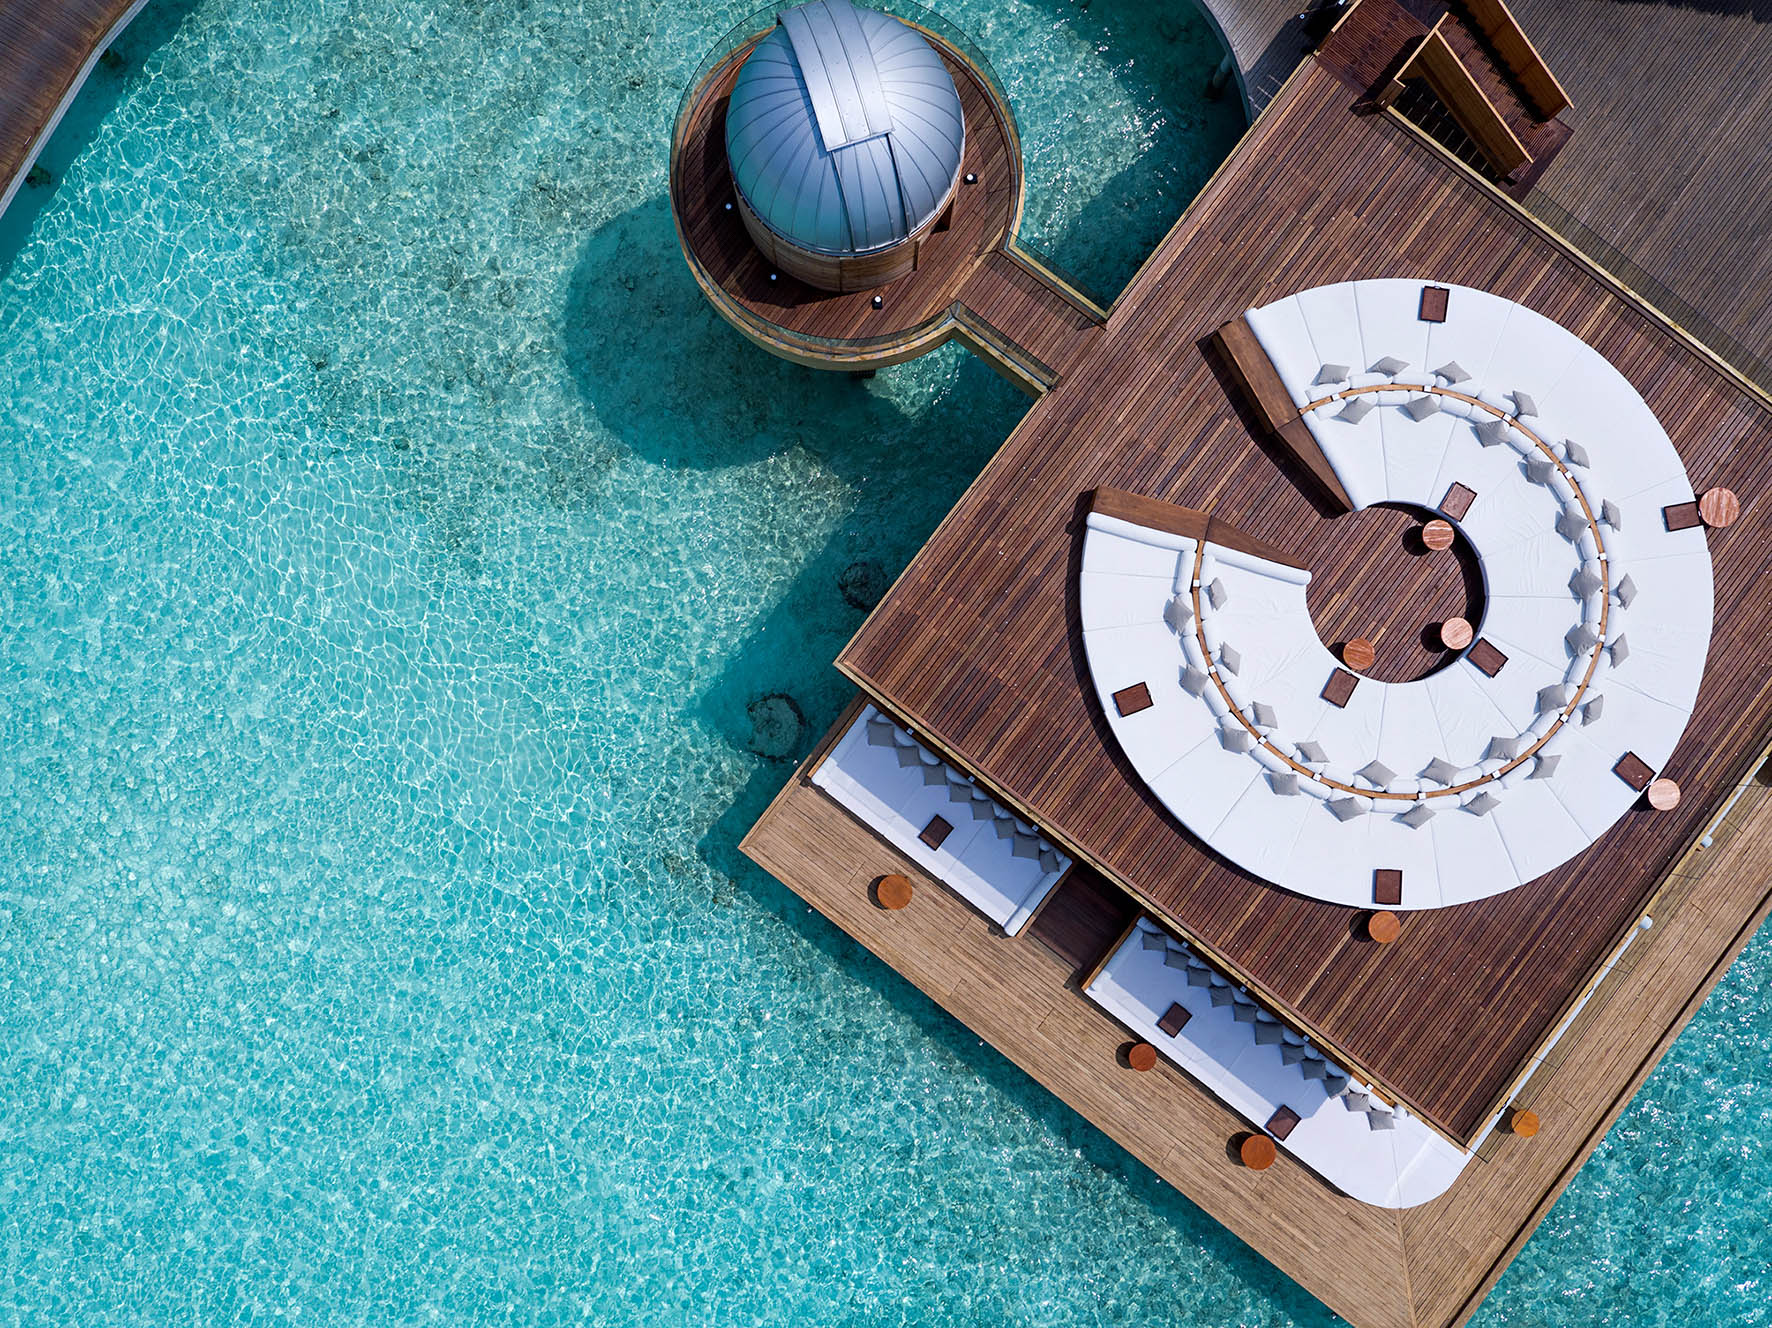 Anantara Kihavah Maldives Villas Resort - Baa Atoll, Maldives - SKY Over Water Observatory and Bar Deck Overhead Aerial View